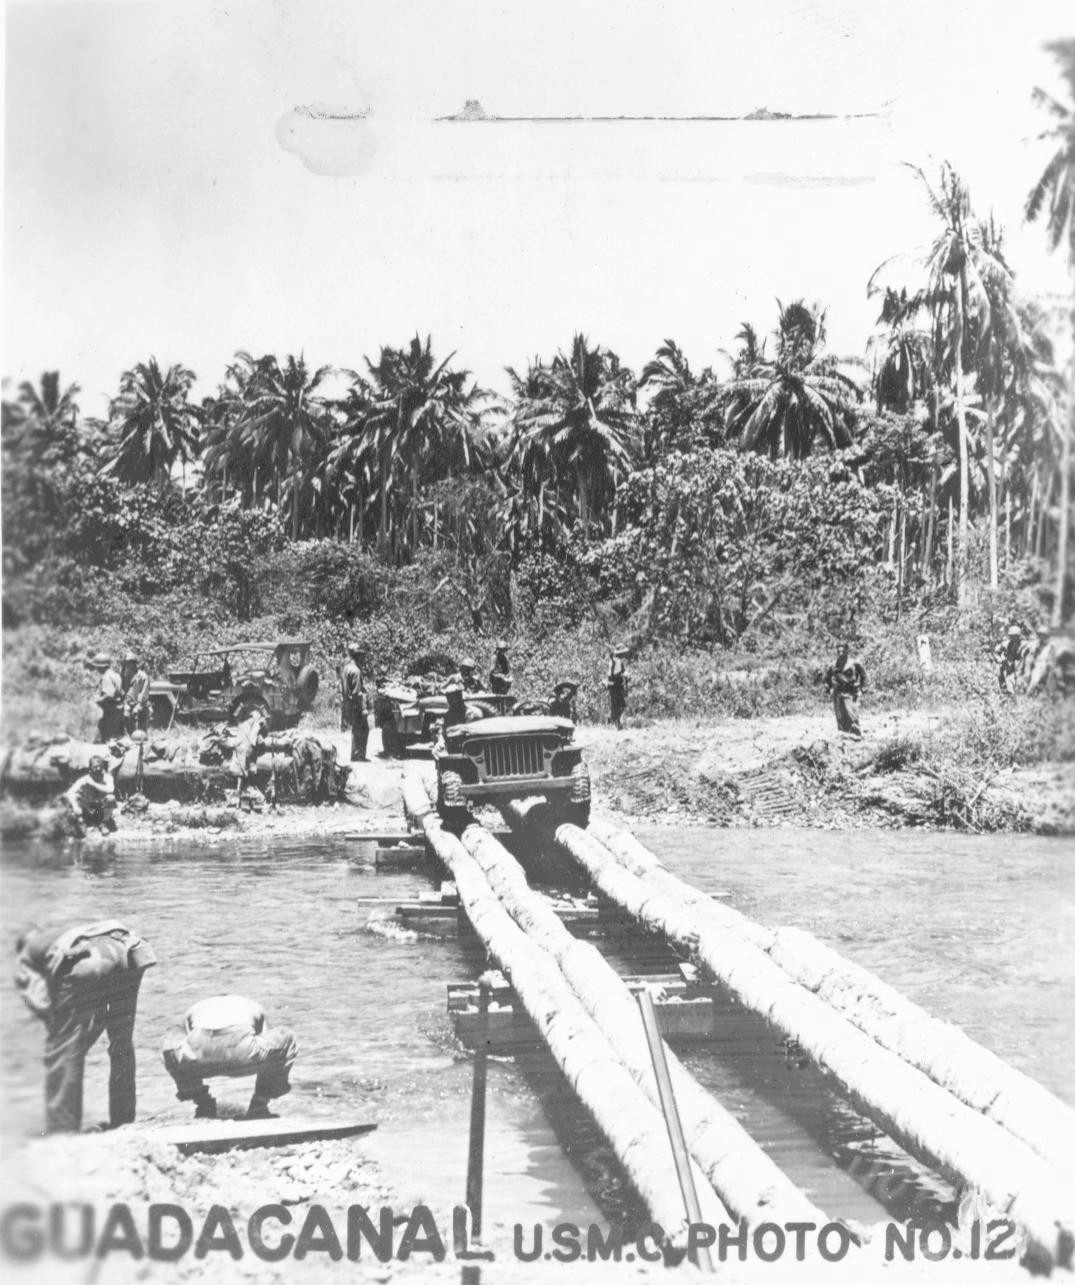 Jeep crossing a coconut tree log bridge over the Bonegi River, Guadalcanal, late 1942